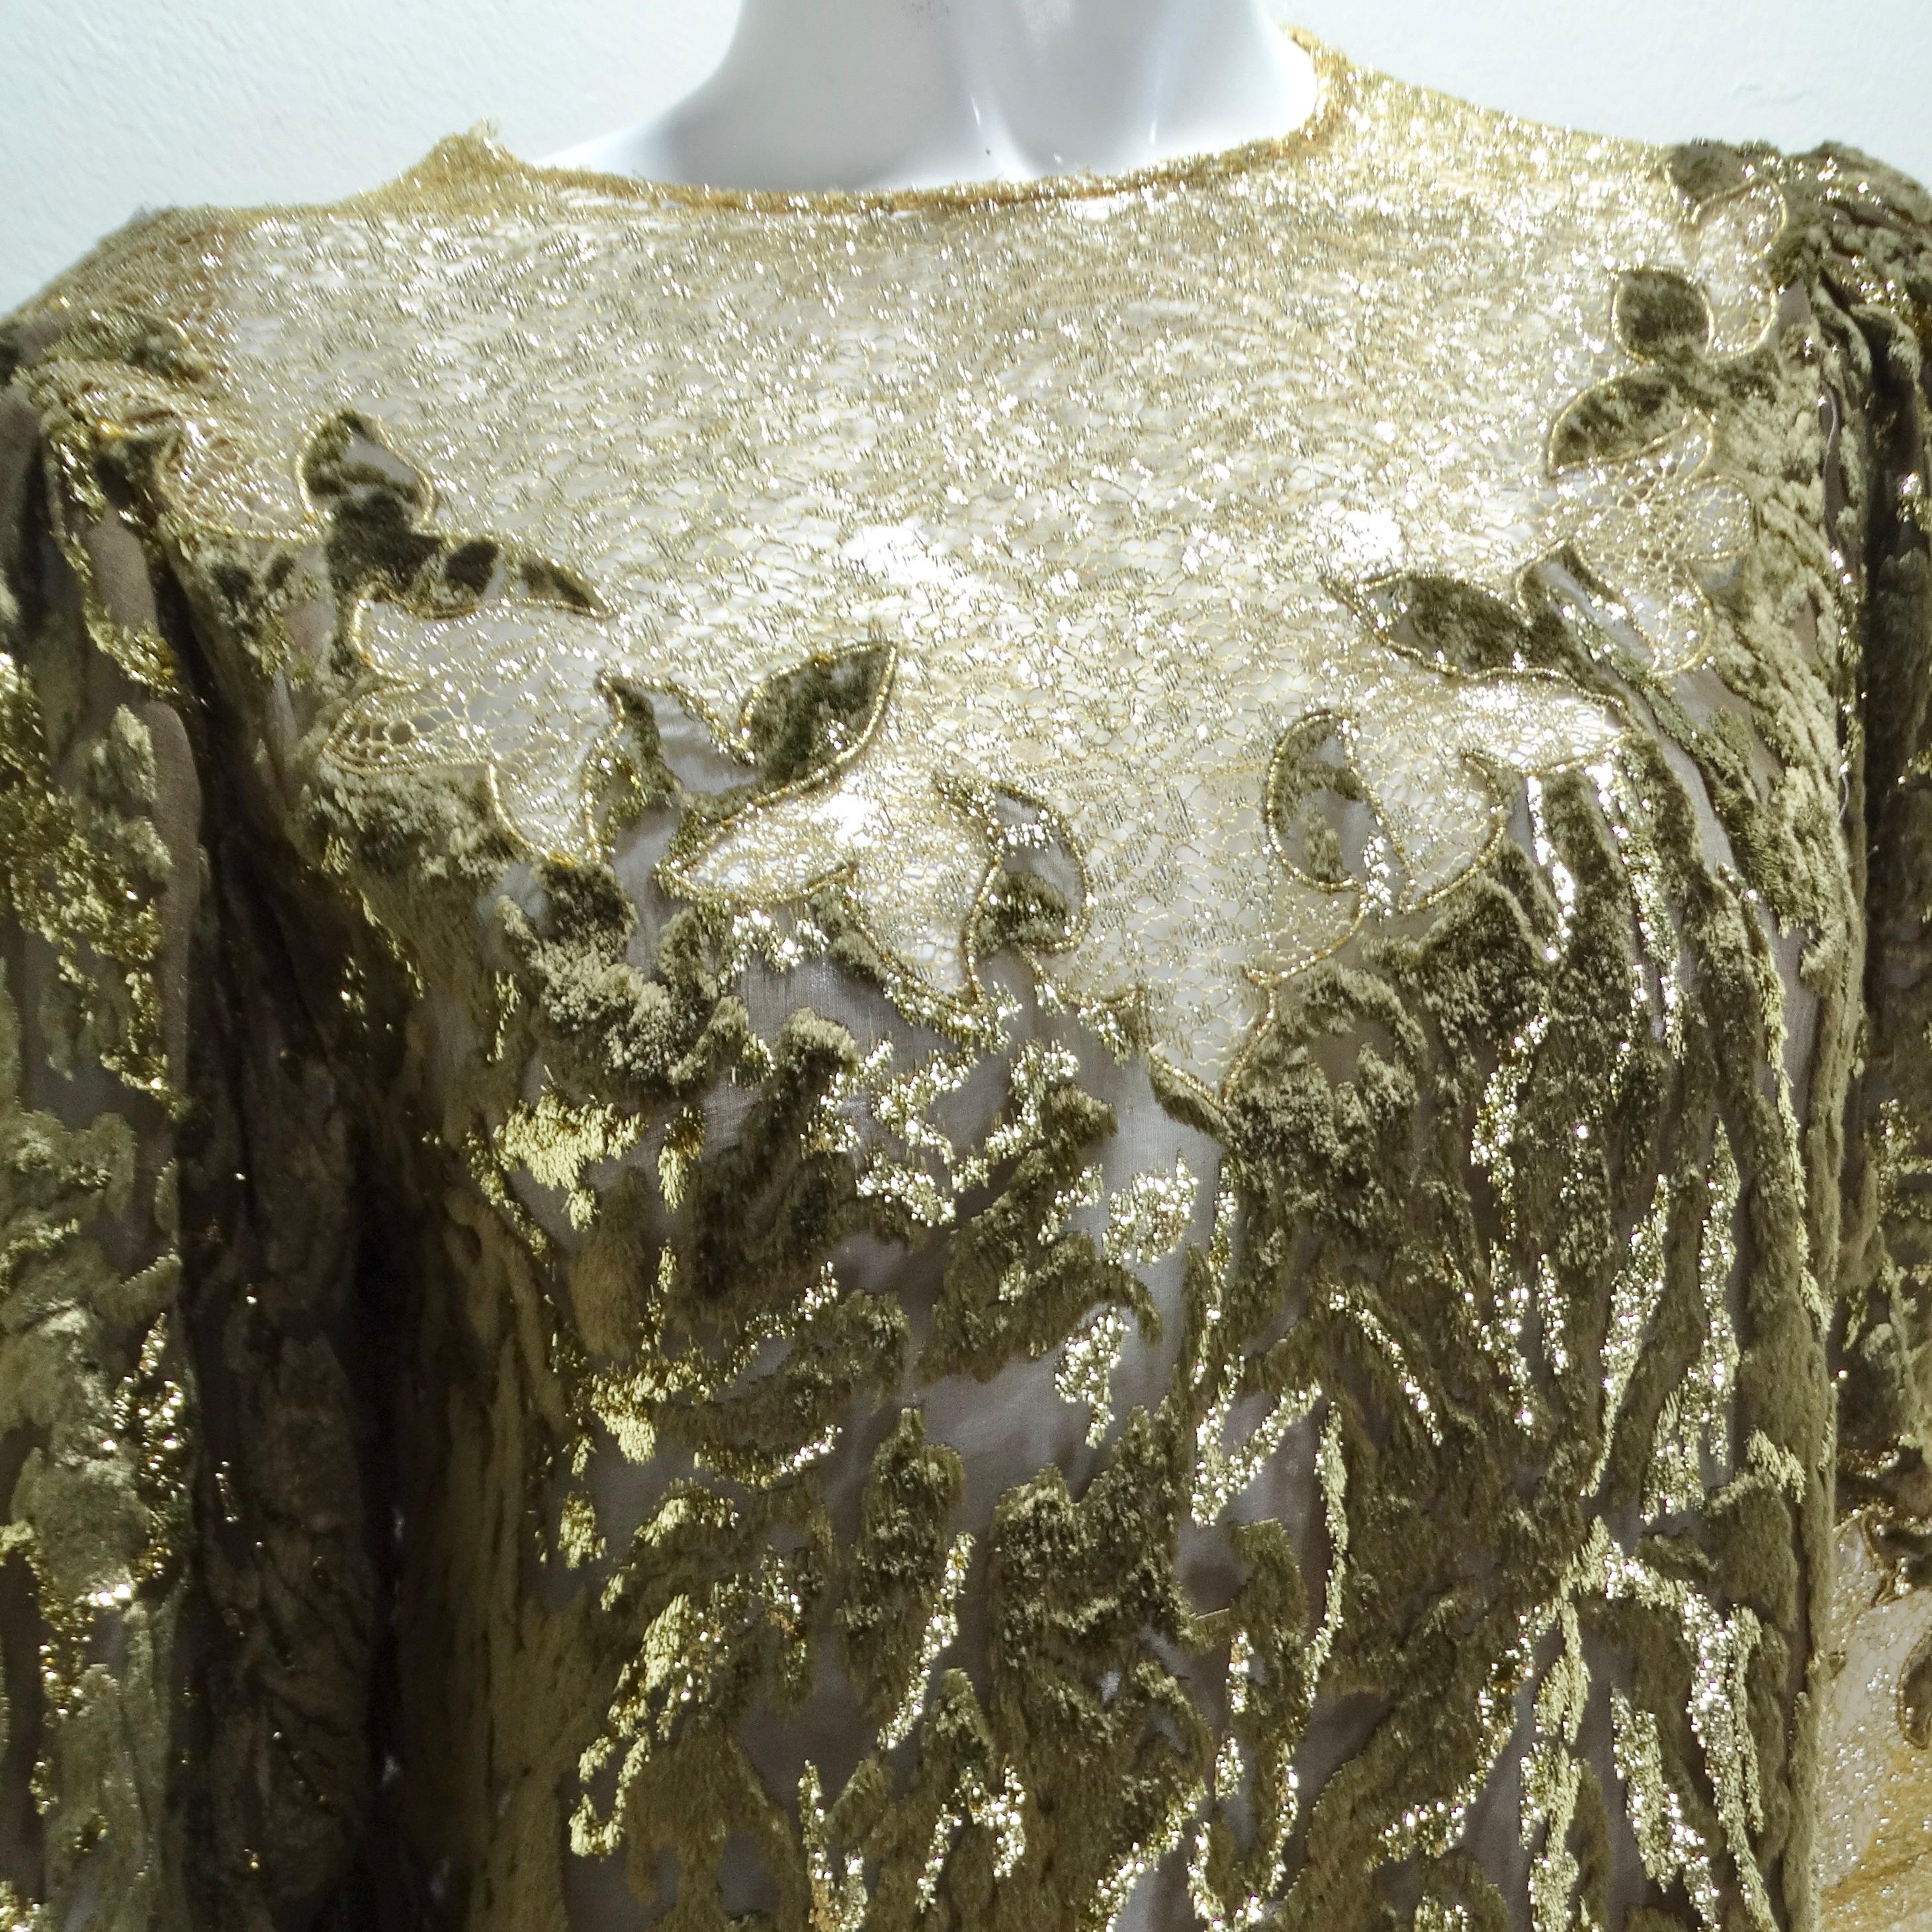 Erleuchten Sie die Nacht mit dem 1980er Metallic Gold Velvet Lace Dress! Das Kleid ist aus einem einzigartigen braunen Samt-Spitzenstoff gefertigt, der dem Gesamtdesign einen Hauch von Raffinesse und Textur verleiht. Der braune Farbton unterstreicht